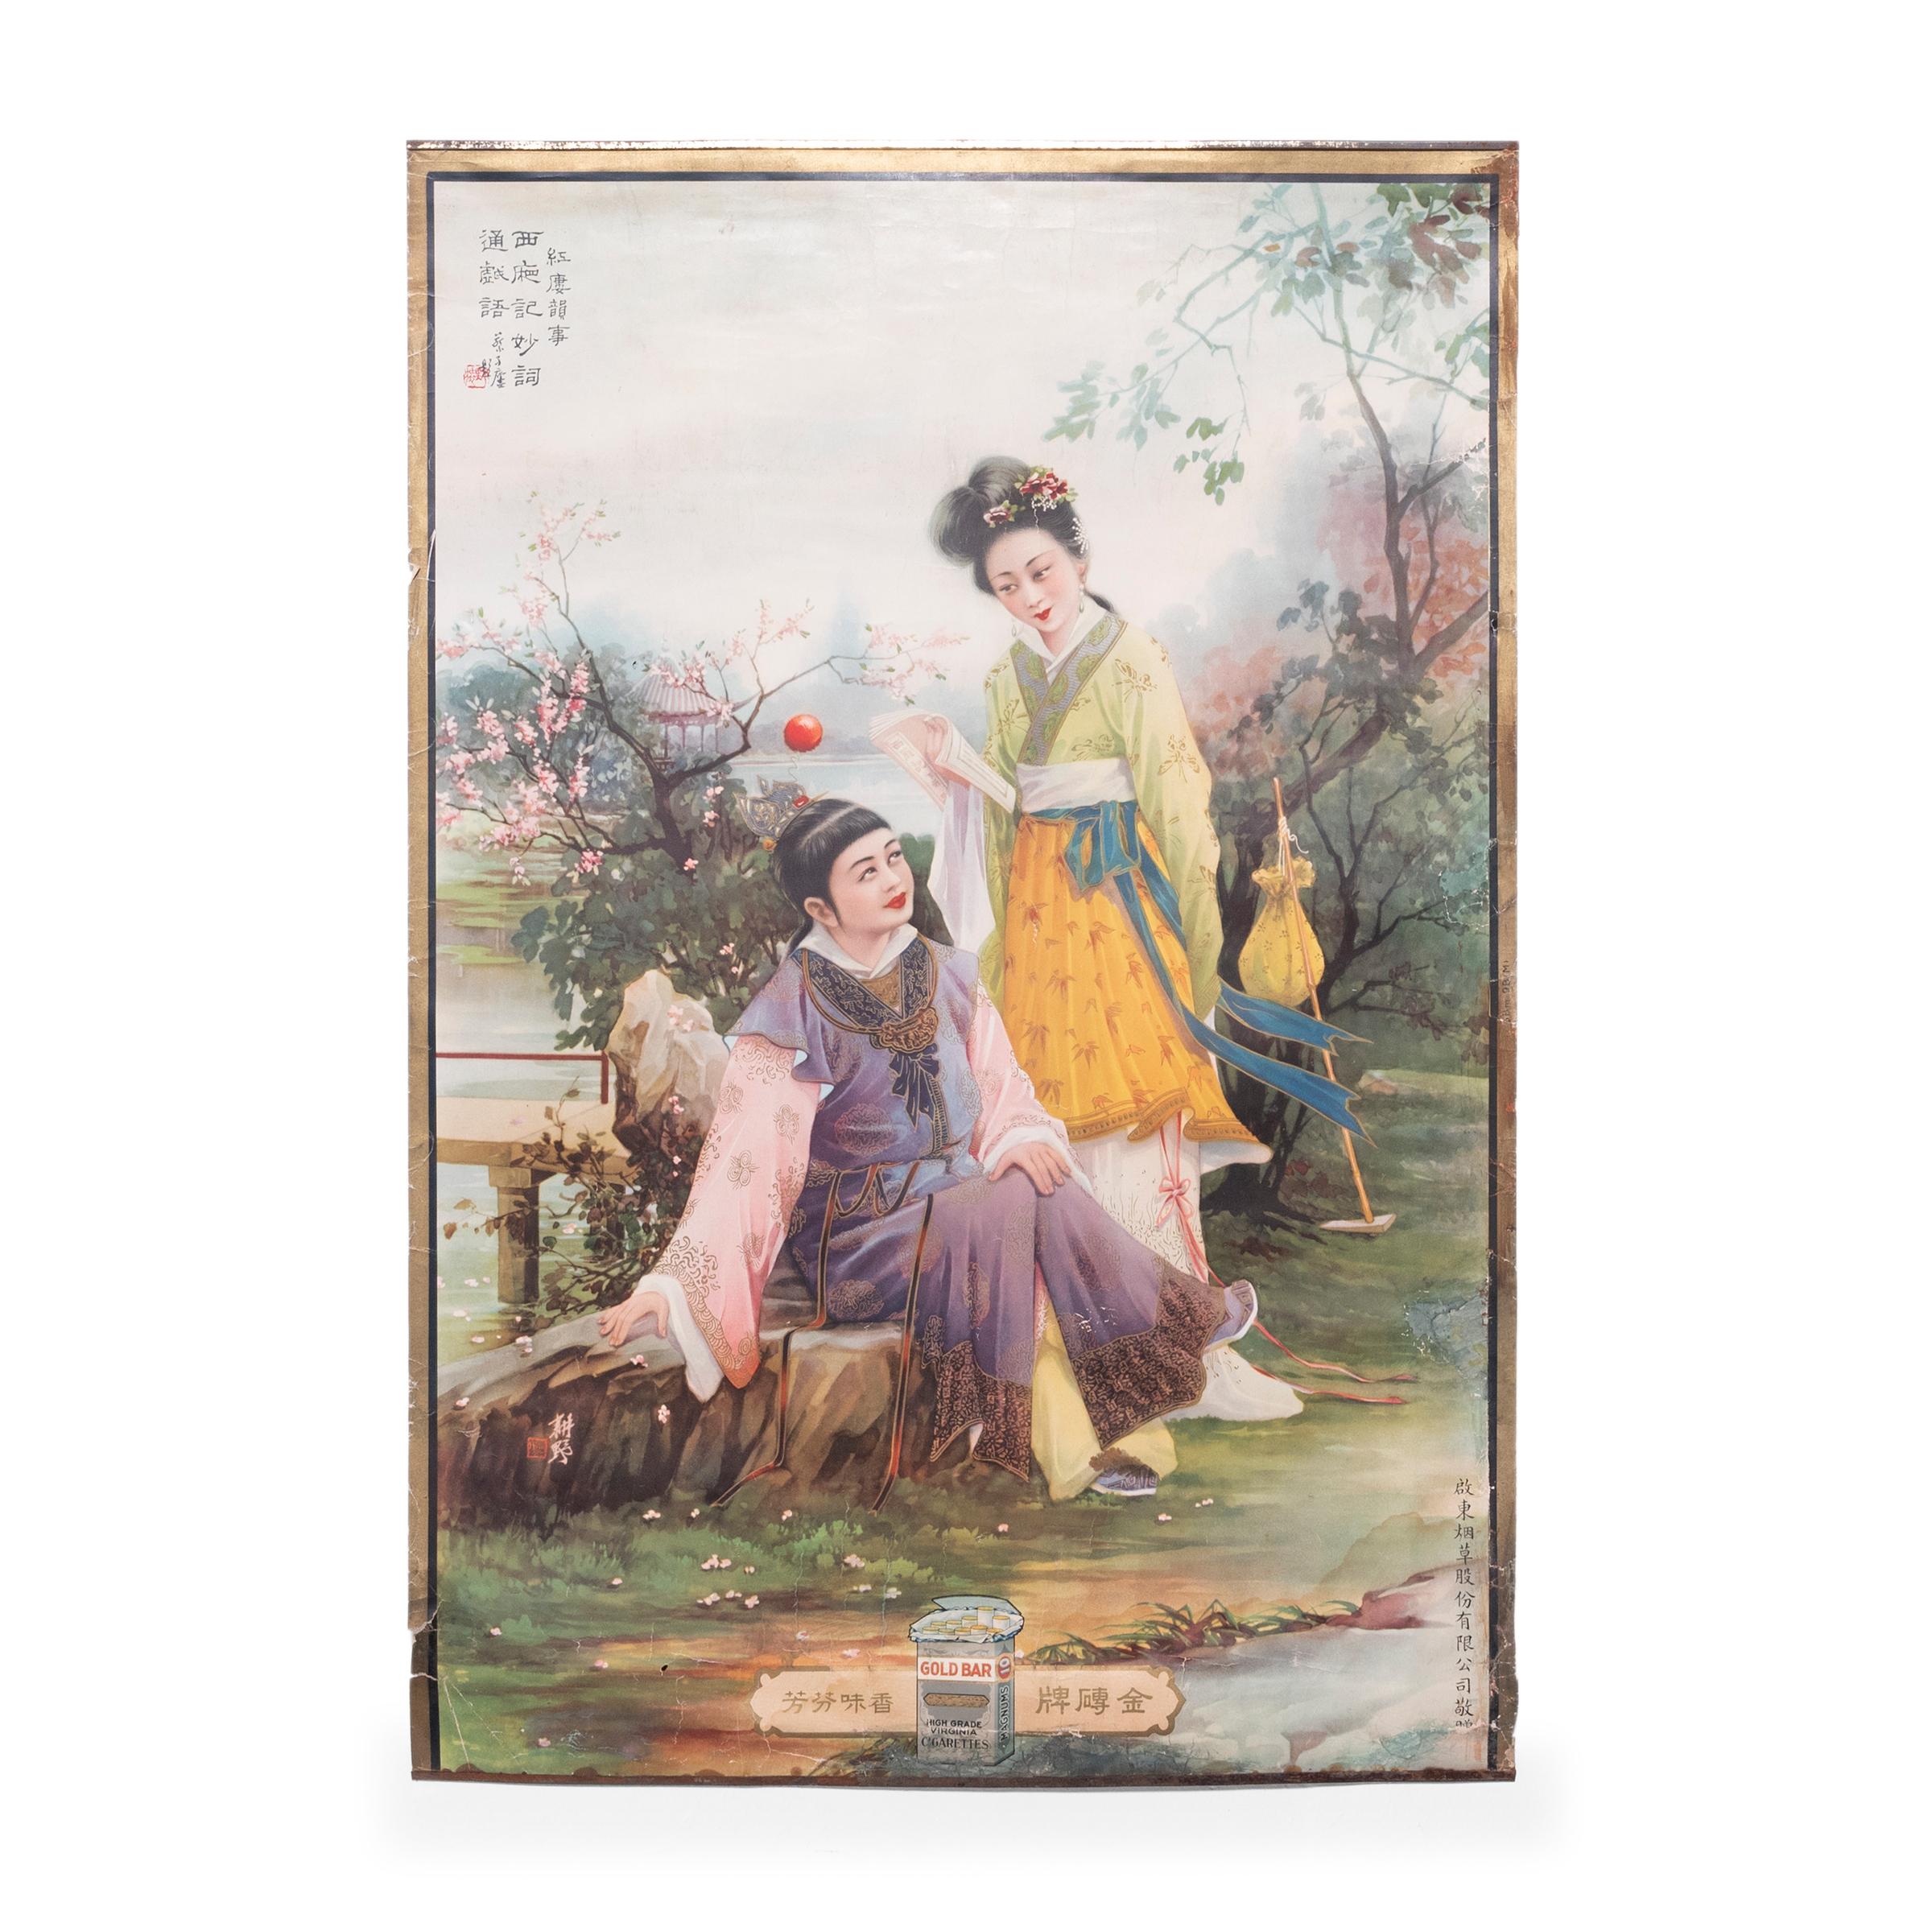 Affiche publicitaire chinoise vintage de bar à cigares en or, vers 1930